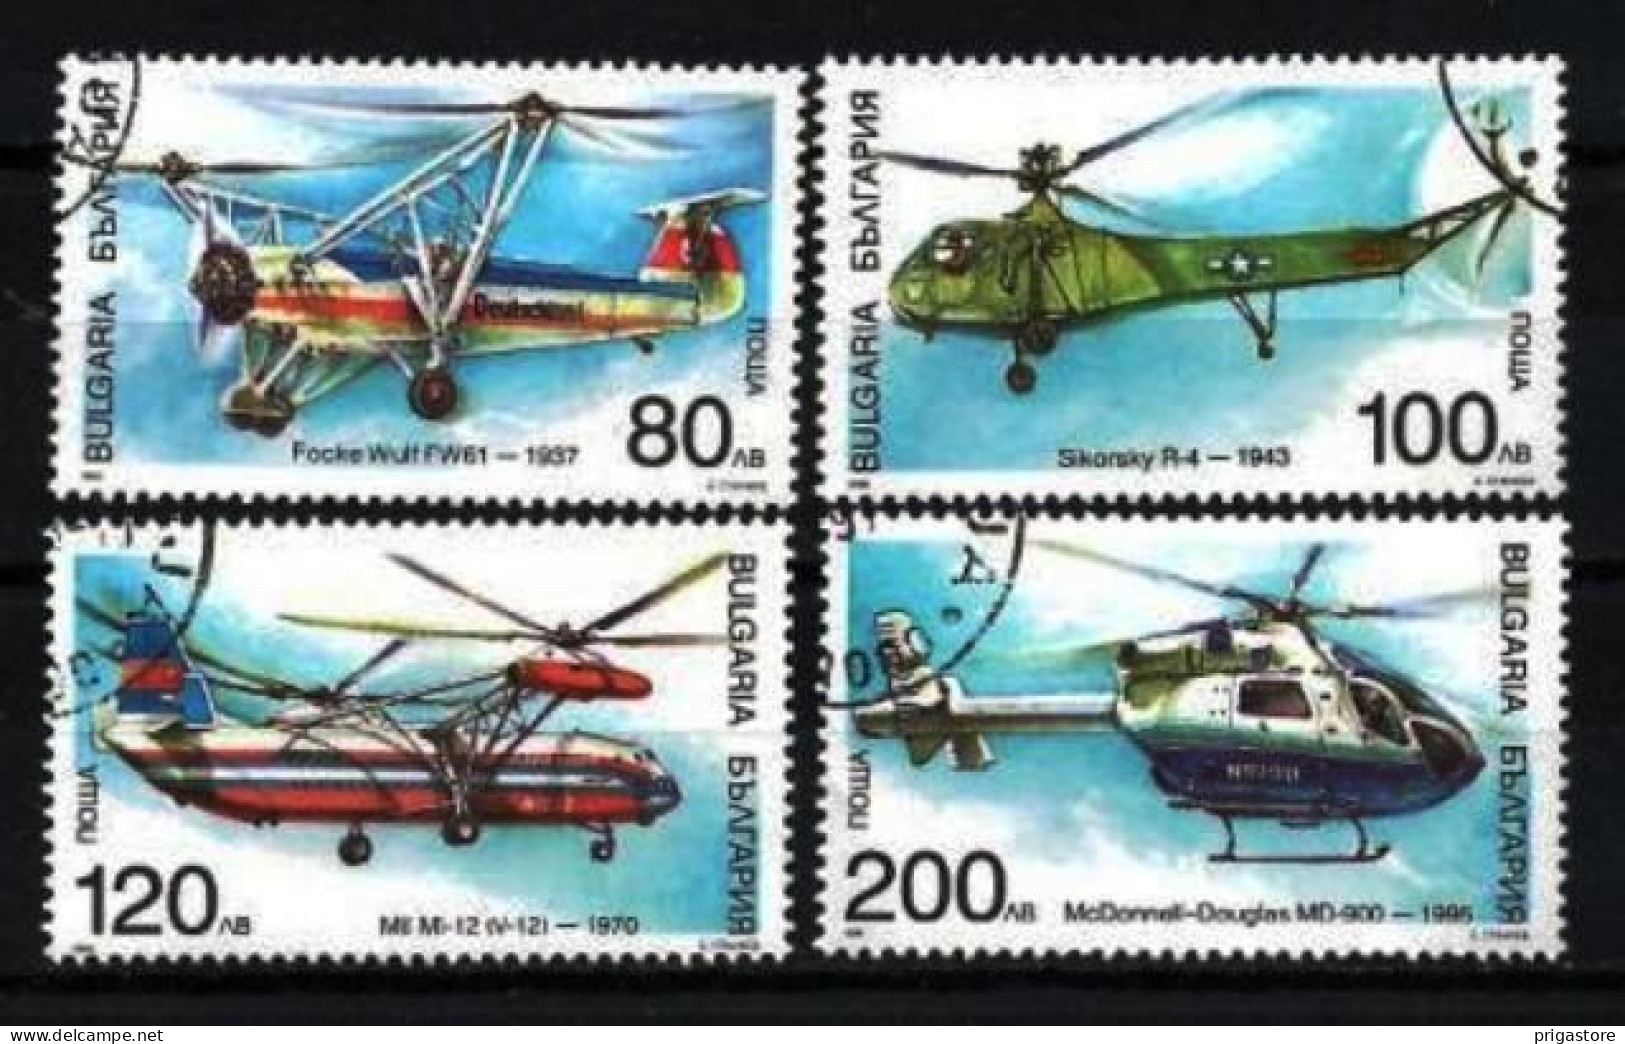 Bulgarie 1998 Avions Hélicoptères (4) Yvert N° 3783 à 3786 Oblitéré Used - Usati